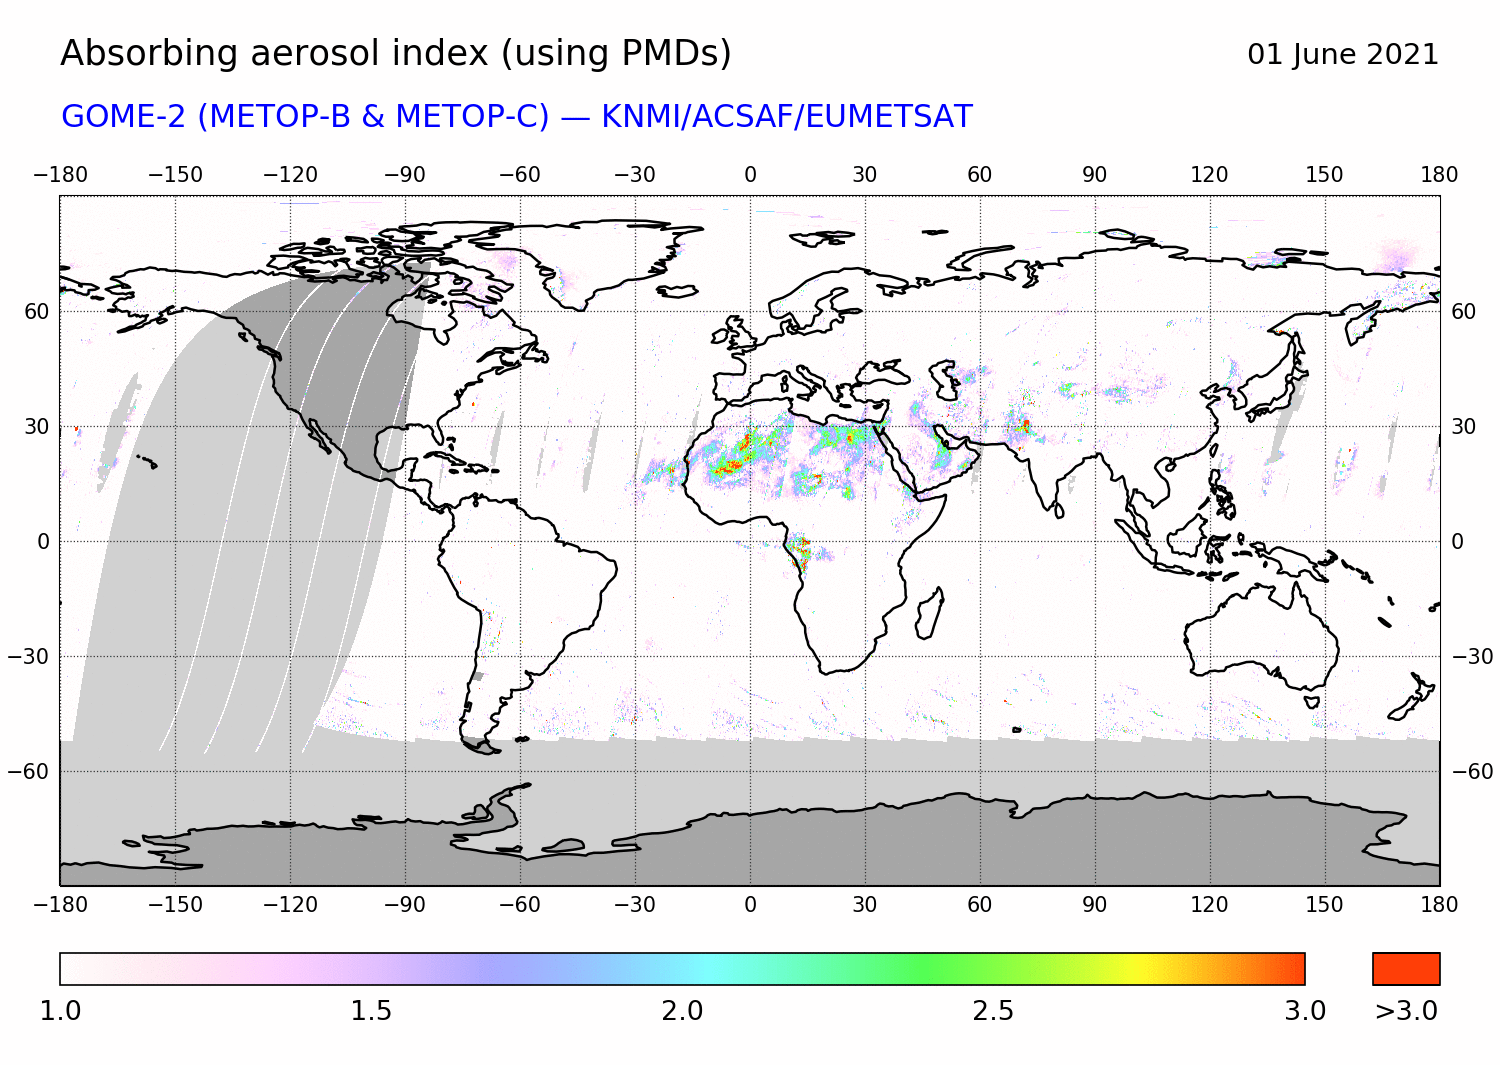 GOME-2 - Absorbing aerosol index of 01 June 2021